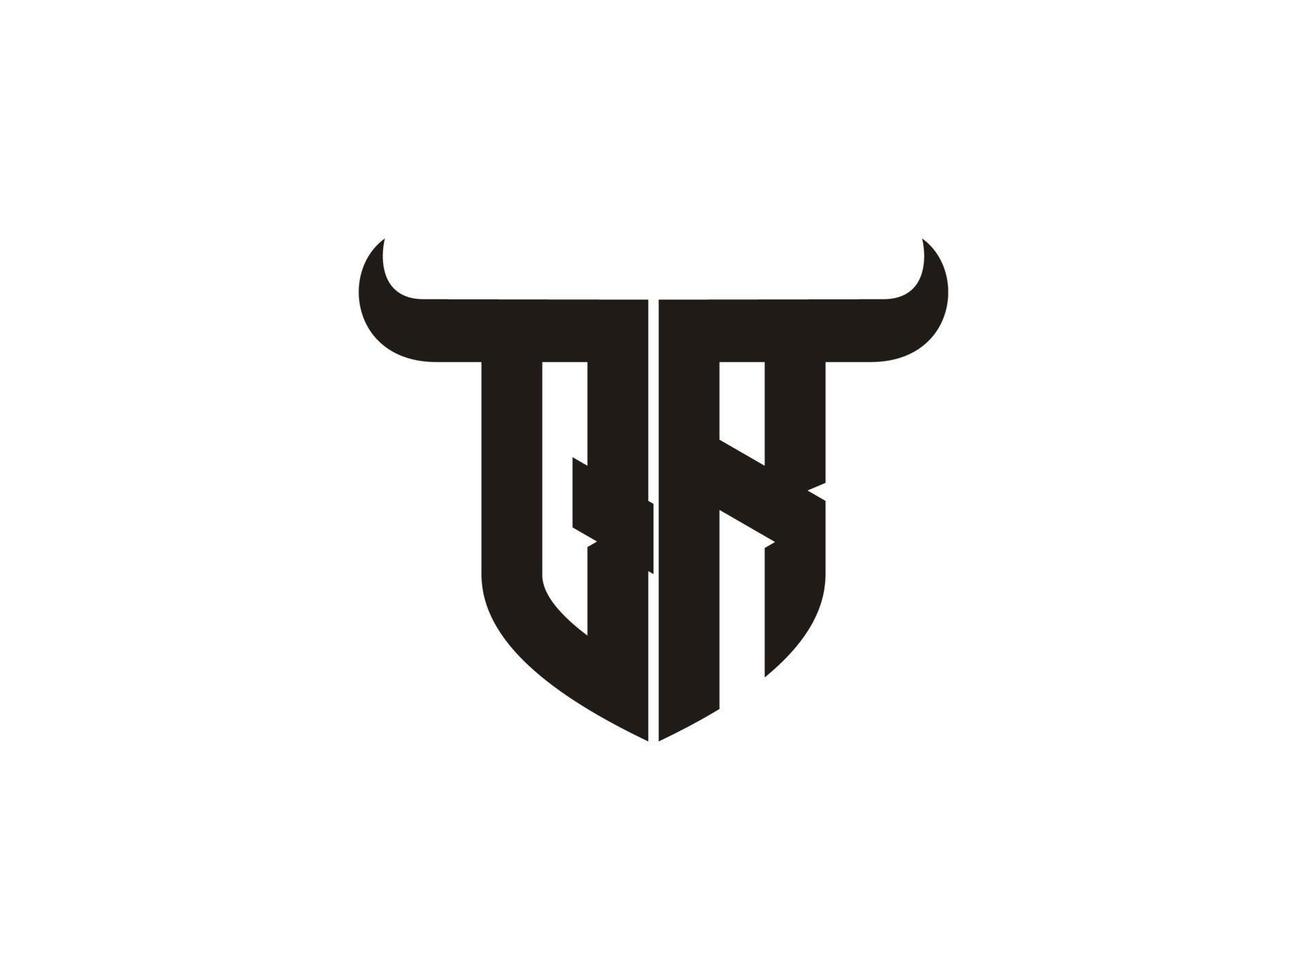 création initiale du logo du taureau qr. vecteur